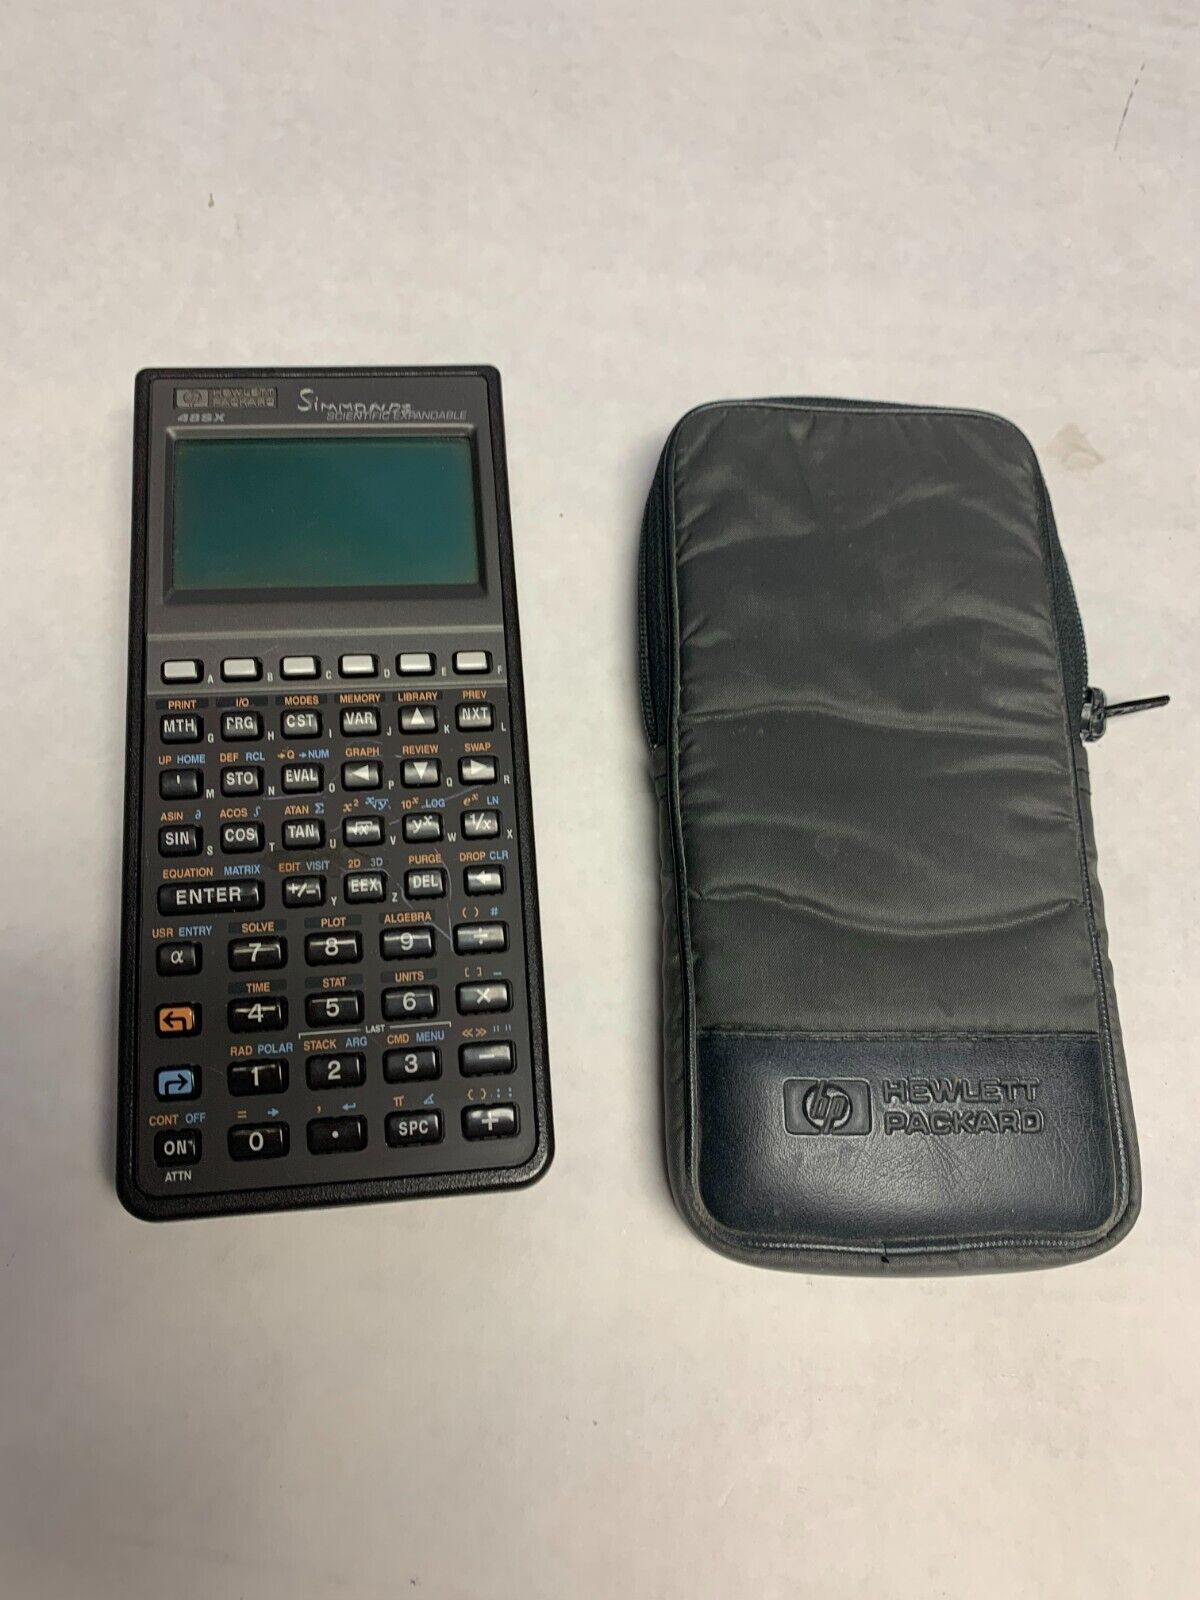 Vintage Hewlett Packard HP 48SX Calculator w/ Case